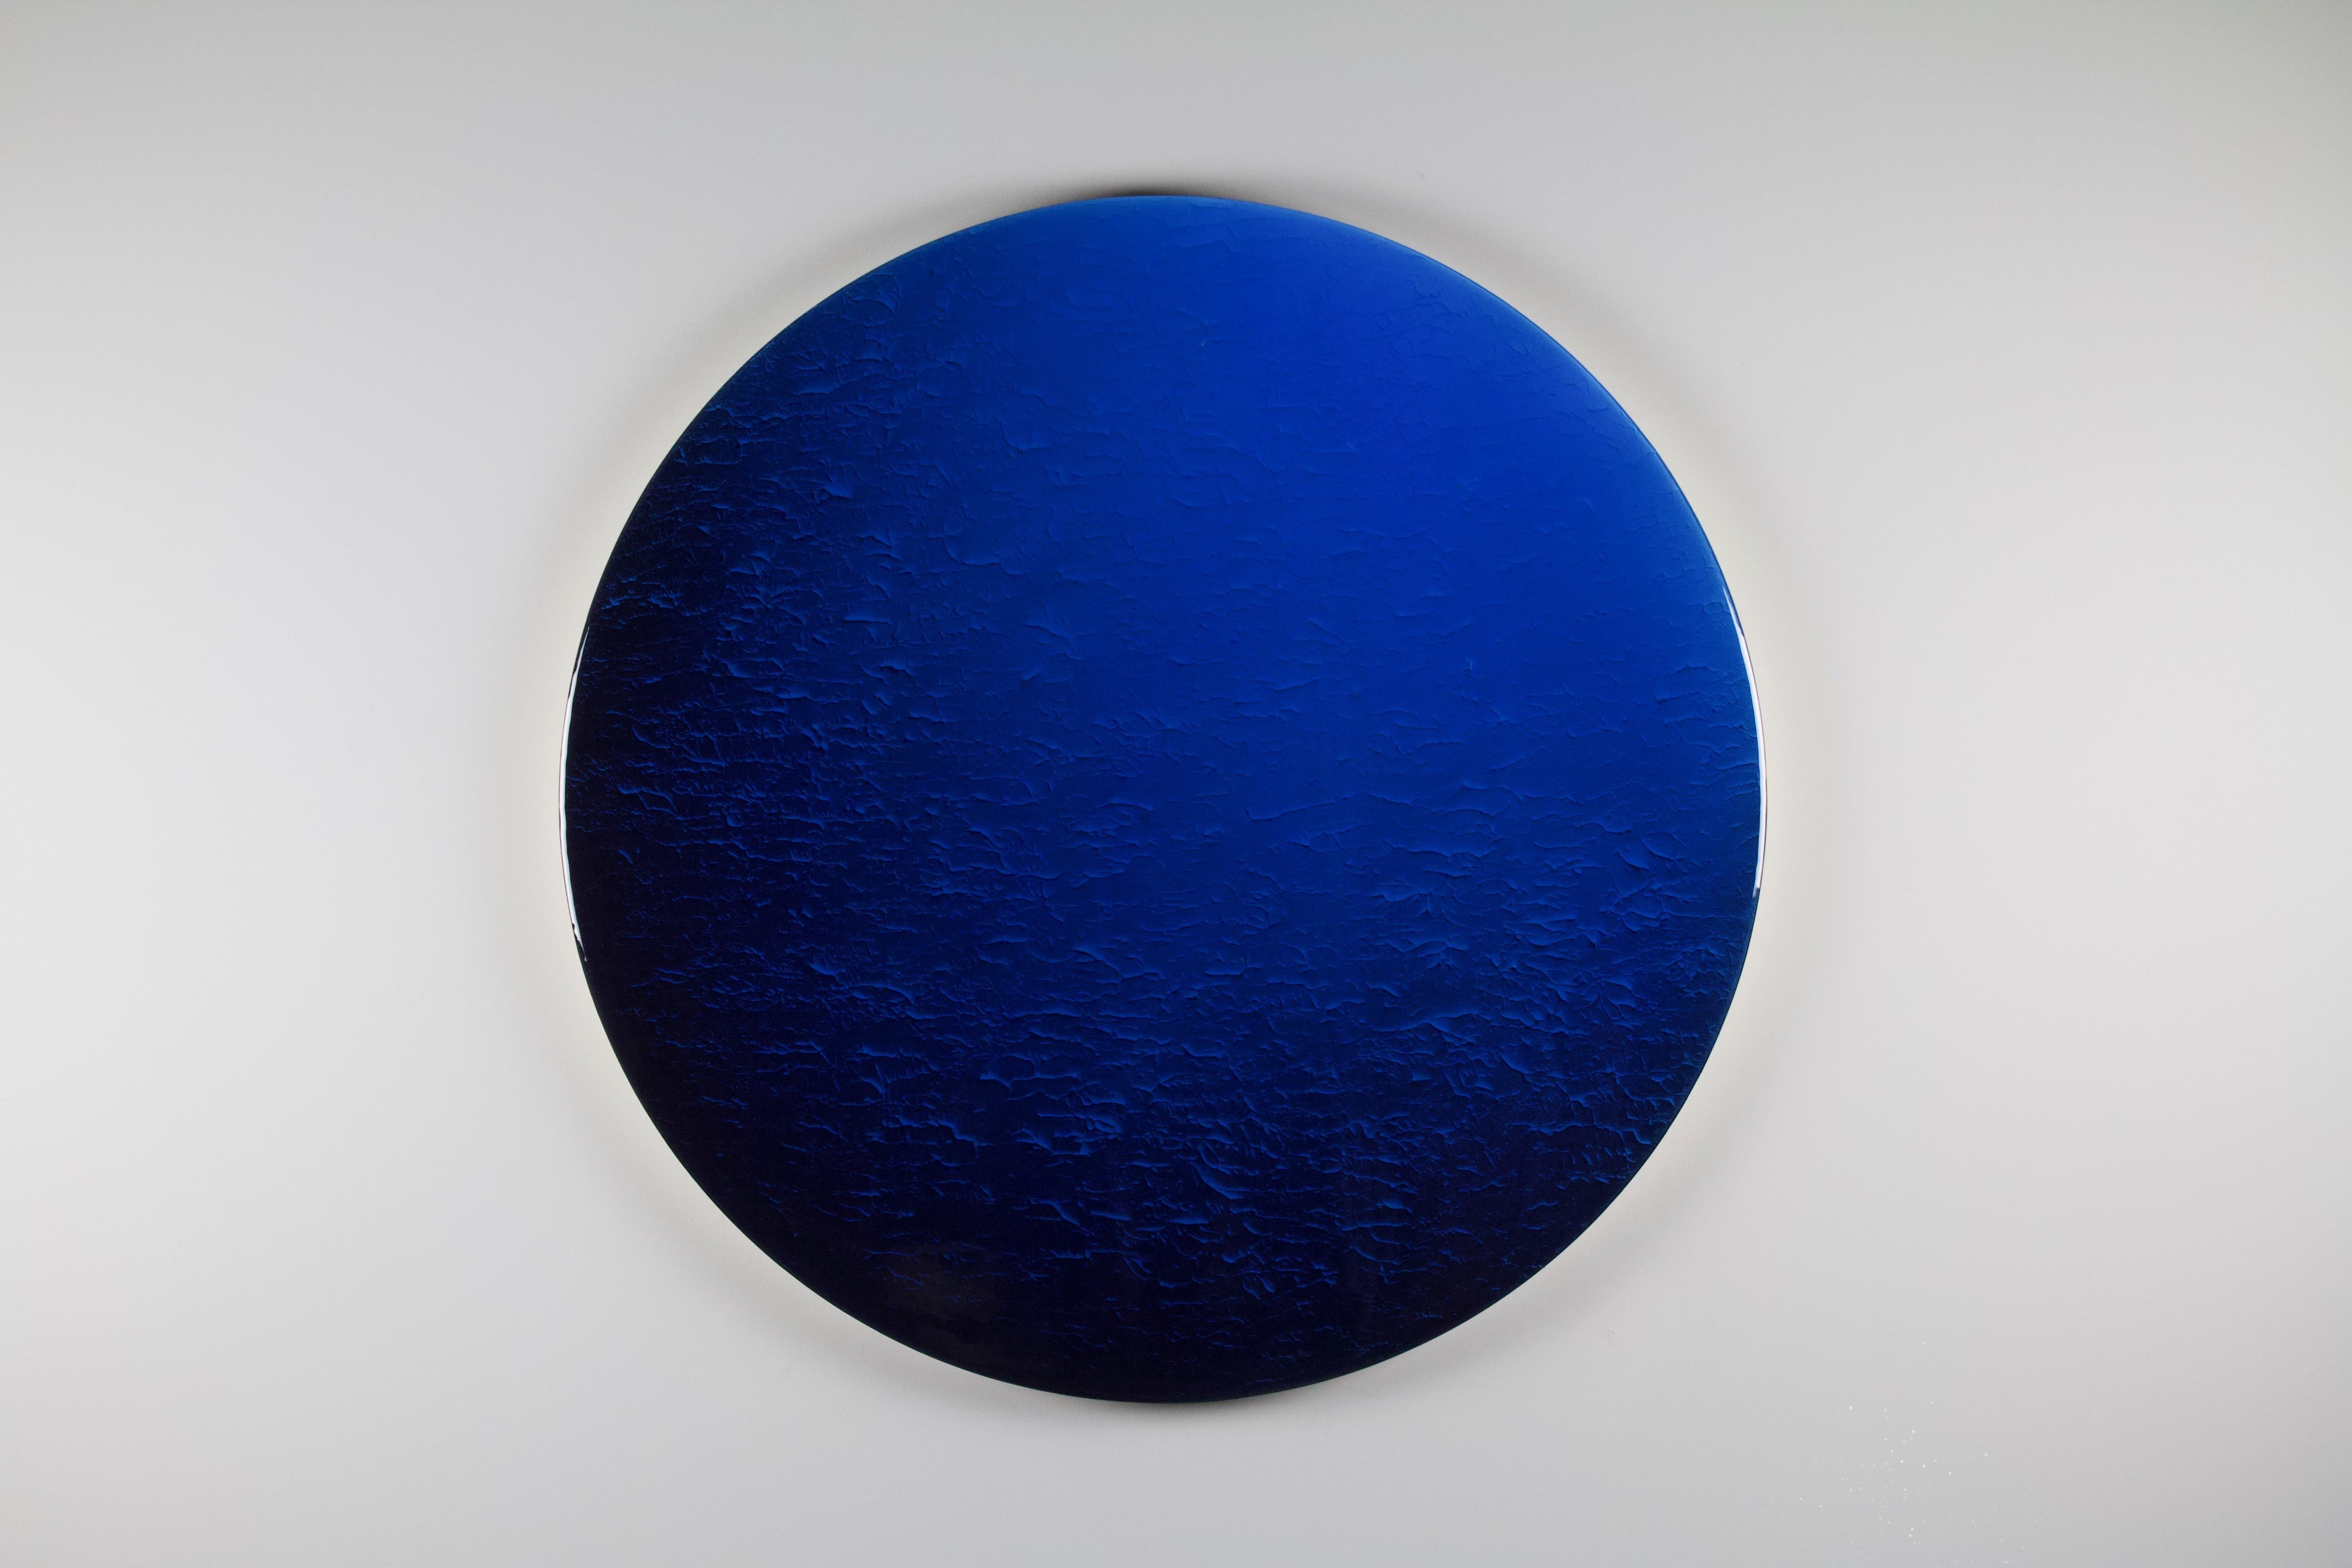 Deux types de personnes : ronde minimaliste par Corine Vanvoorbergen
Dimensions : diamètre 180 cm
Matériaux : Laiton, bois, pigments naturels, époxy et acrylique.

Il y a deux sortes de personnes. Ceux qui voient la nuit arriver et ceux qui voient